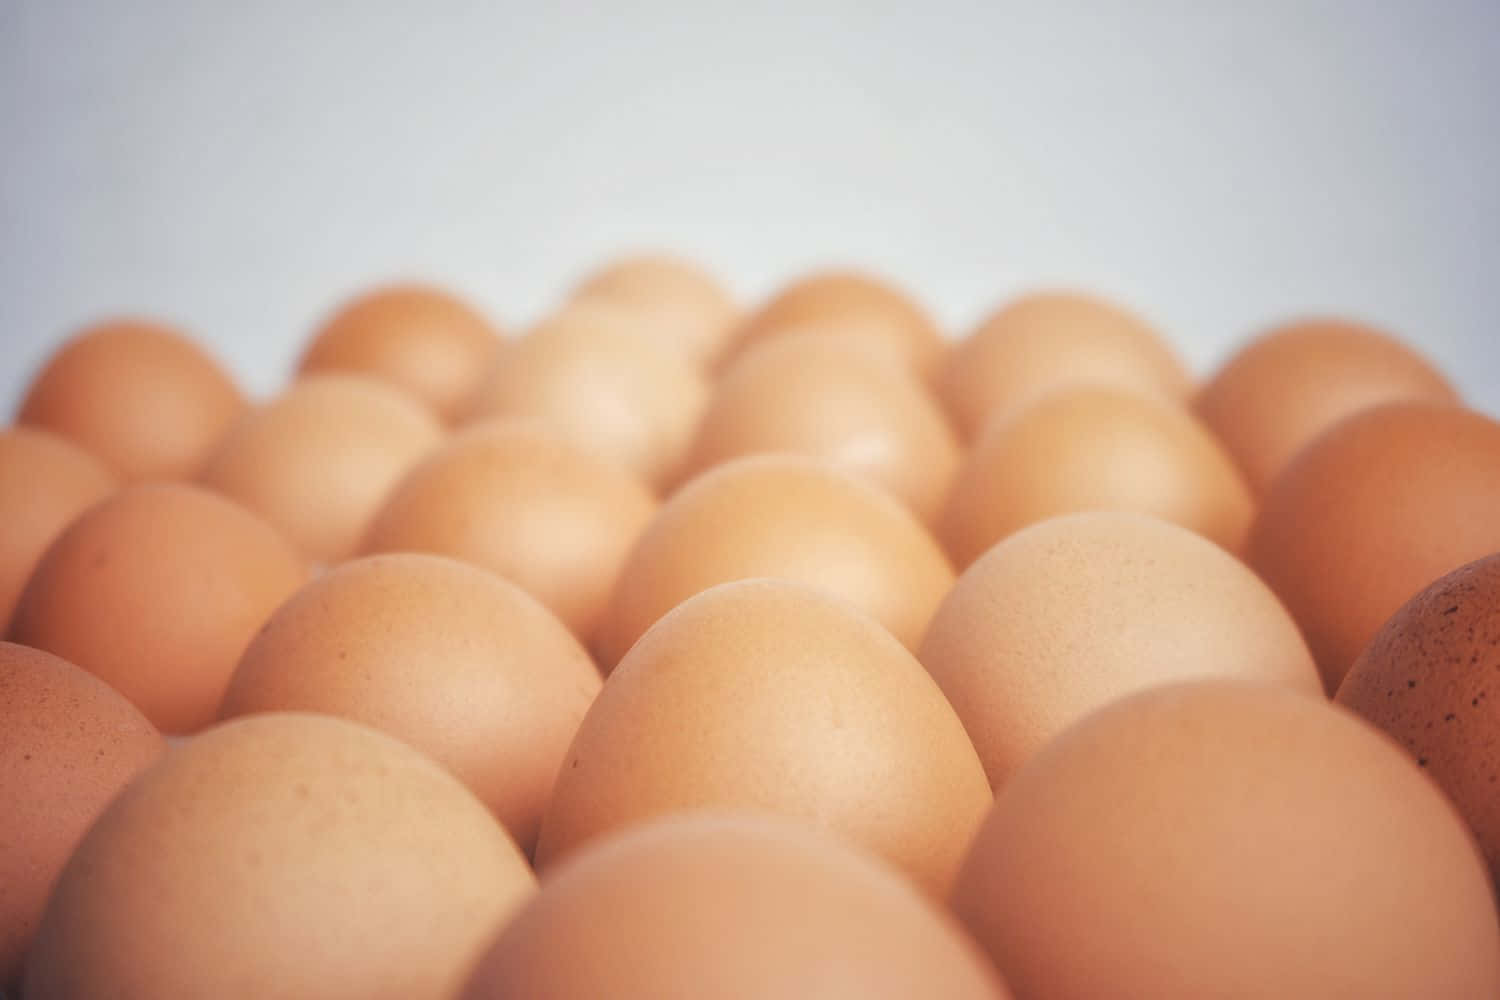 An egg carton full of fresh eggs